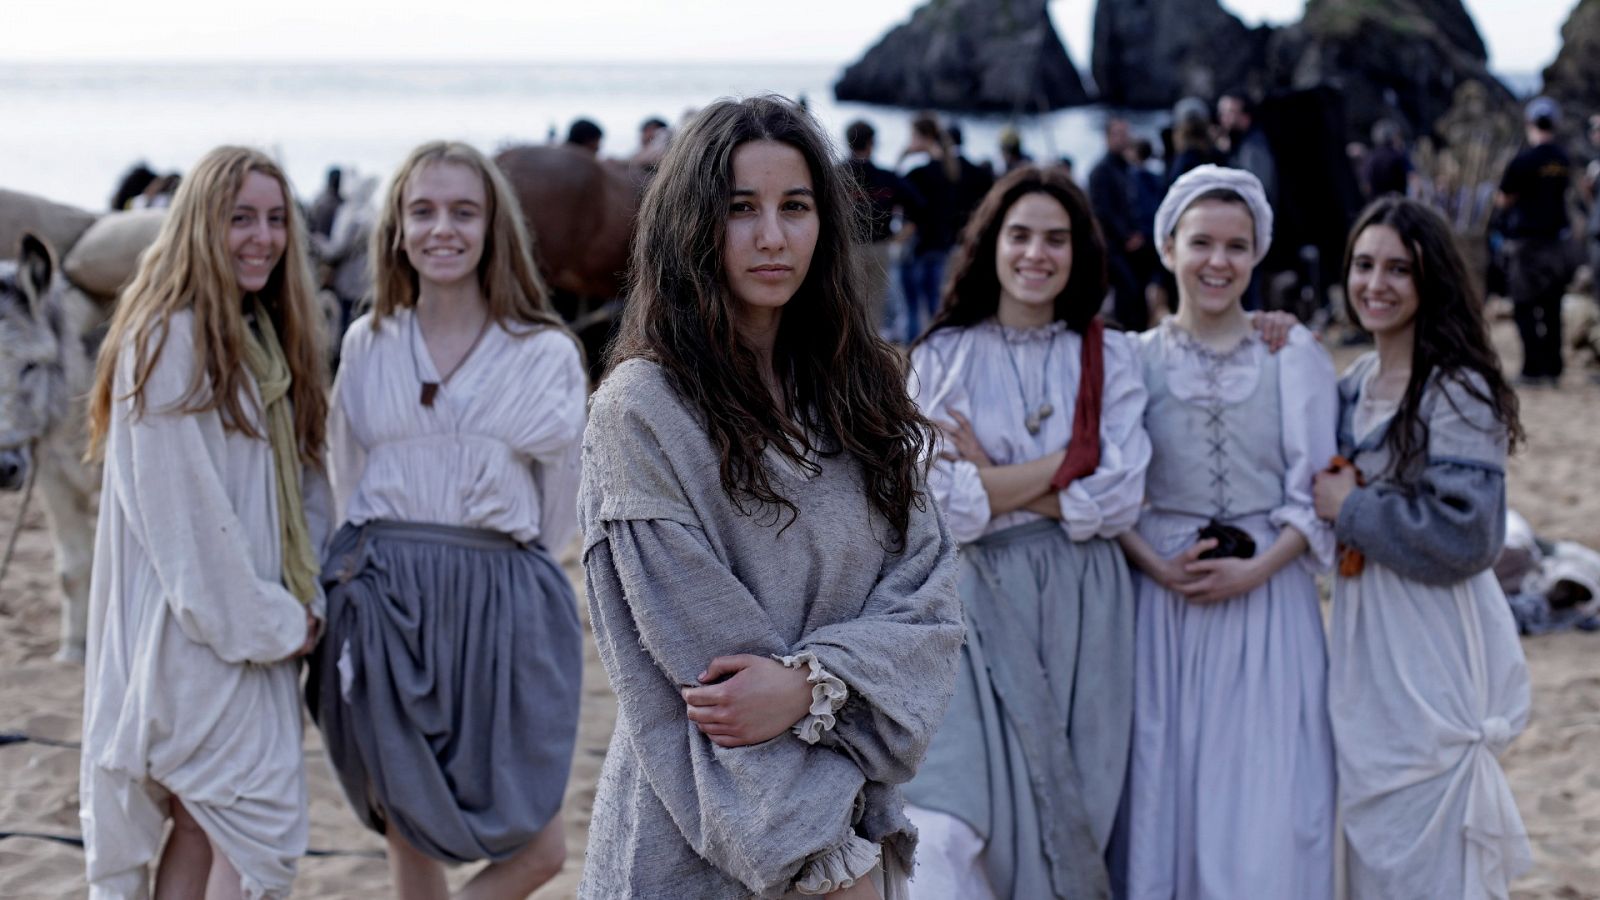 Cine | RTVE.es estrena el tráiler de 'Akelarre', un drama histórico y feminista basado en un juicio real de brujería